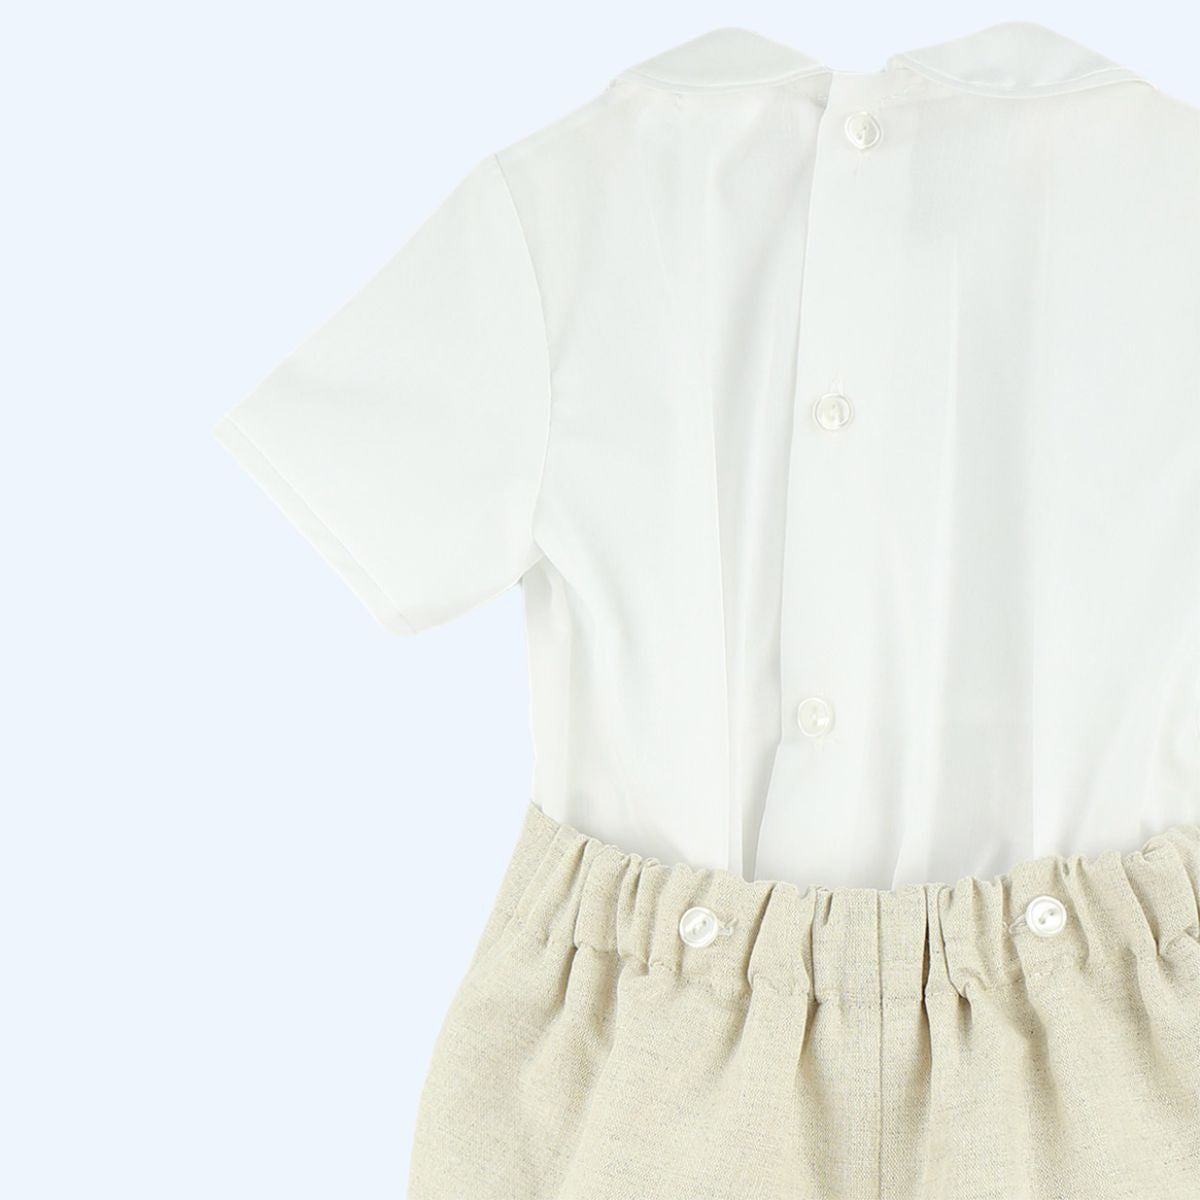 Babyferr beige shorts & shirt set